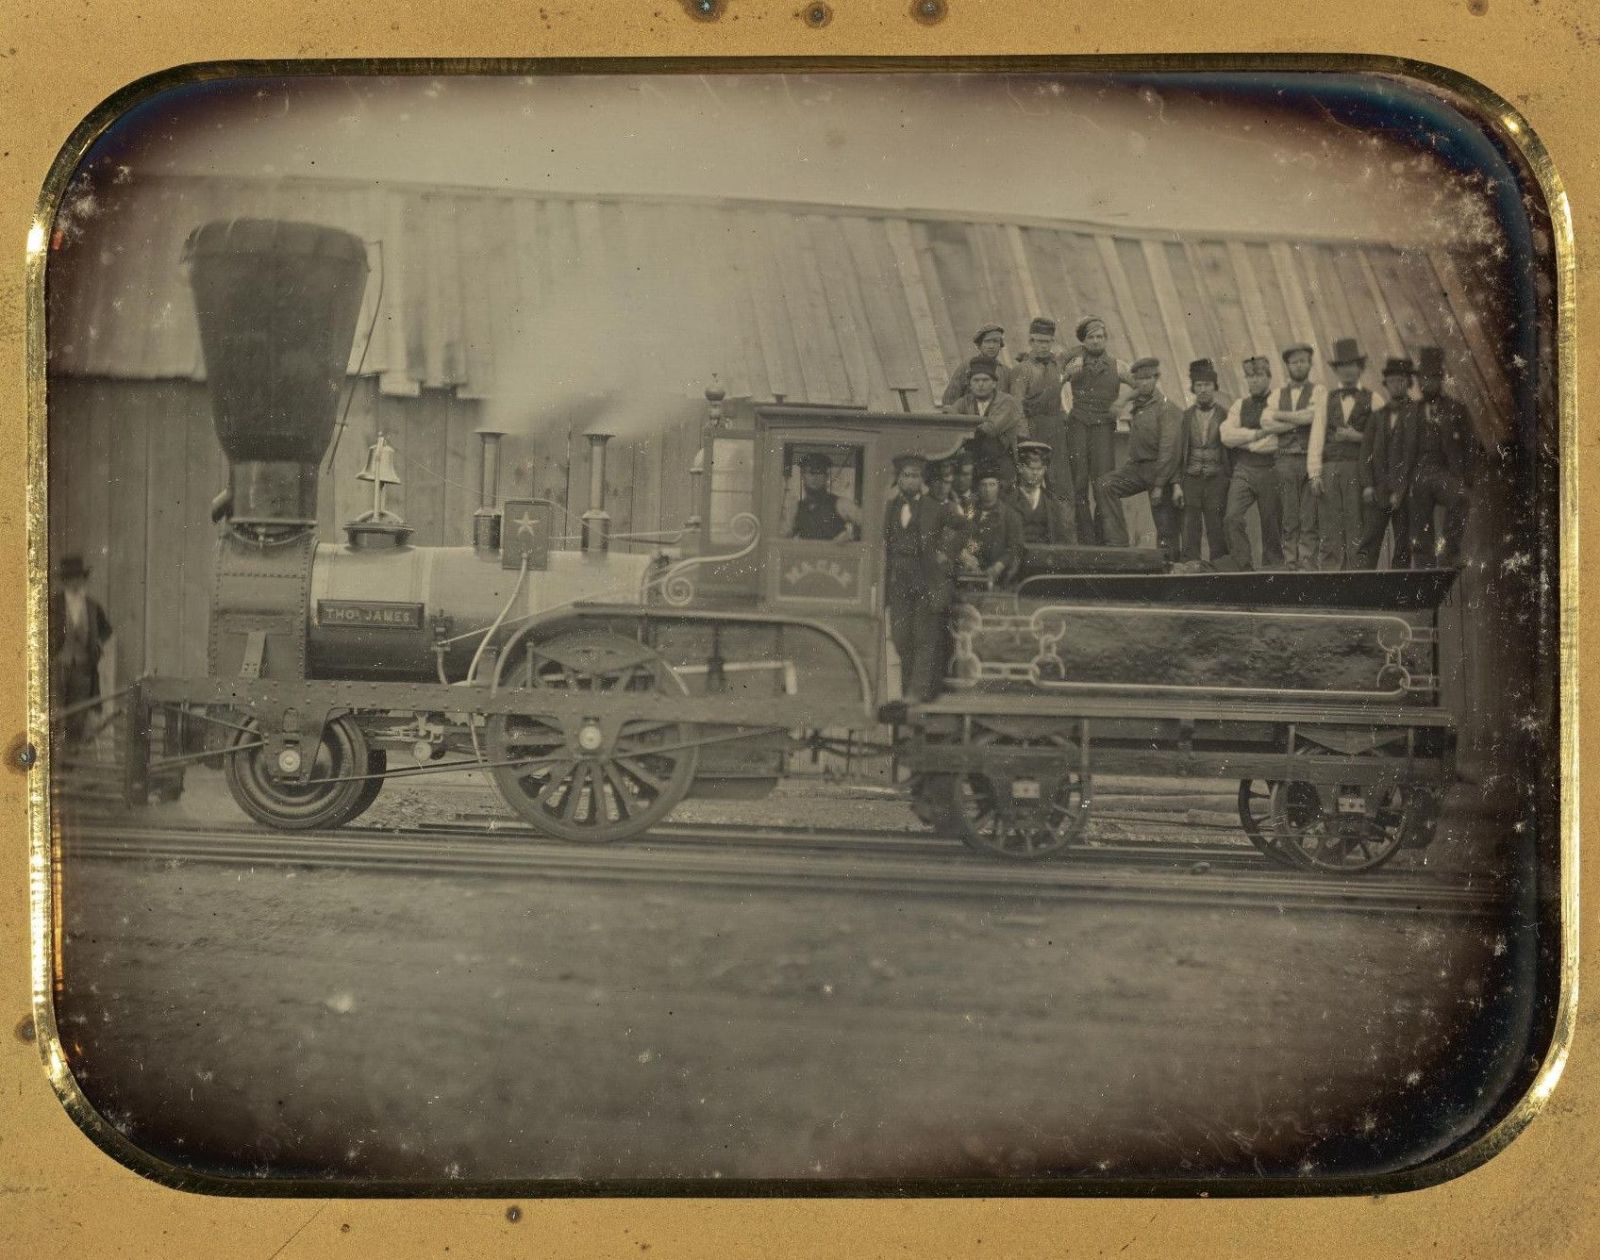 photo of planet type locomotive